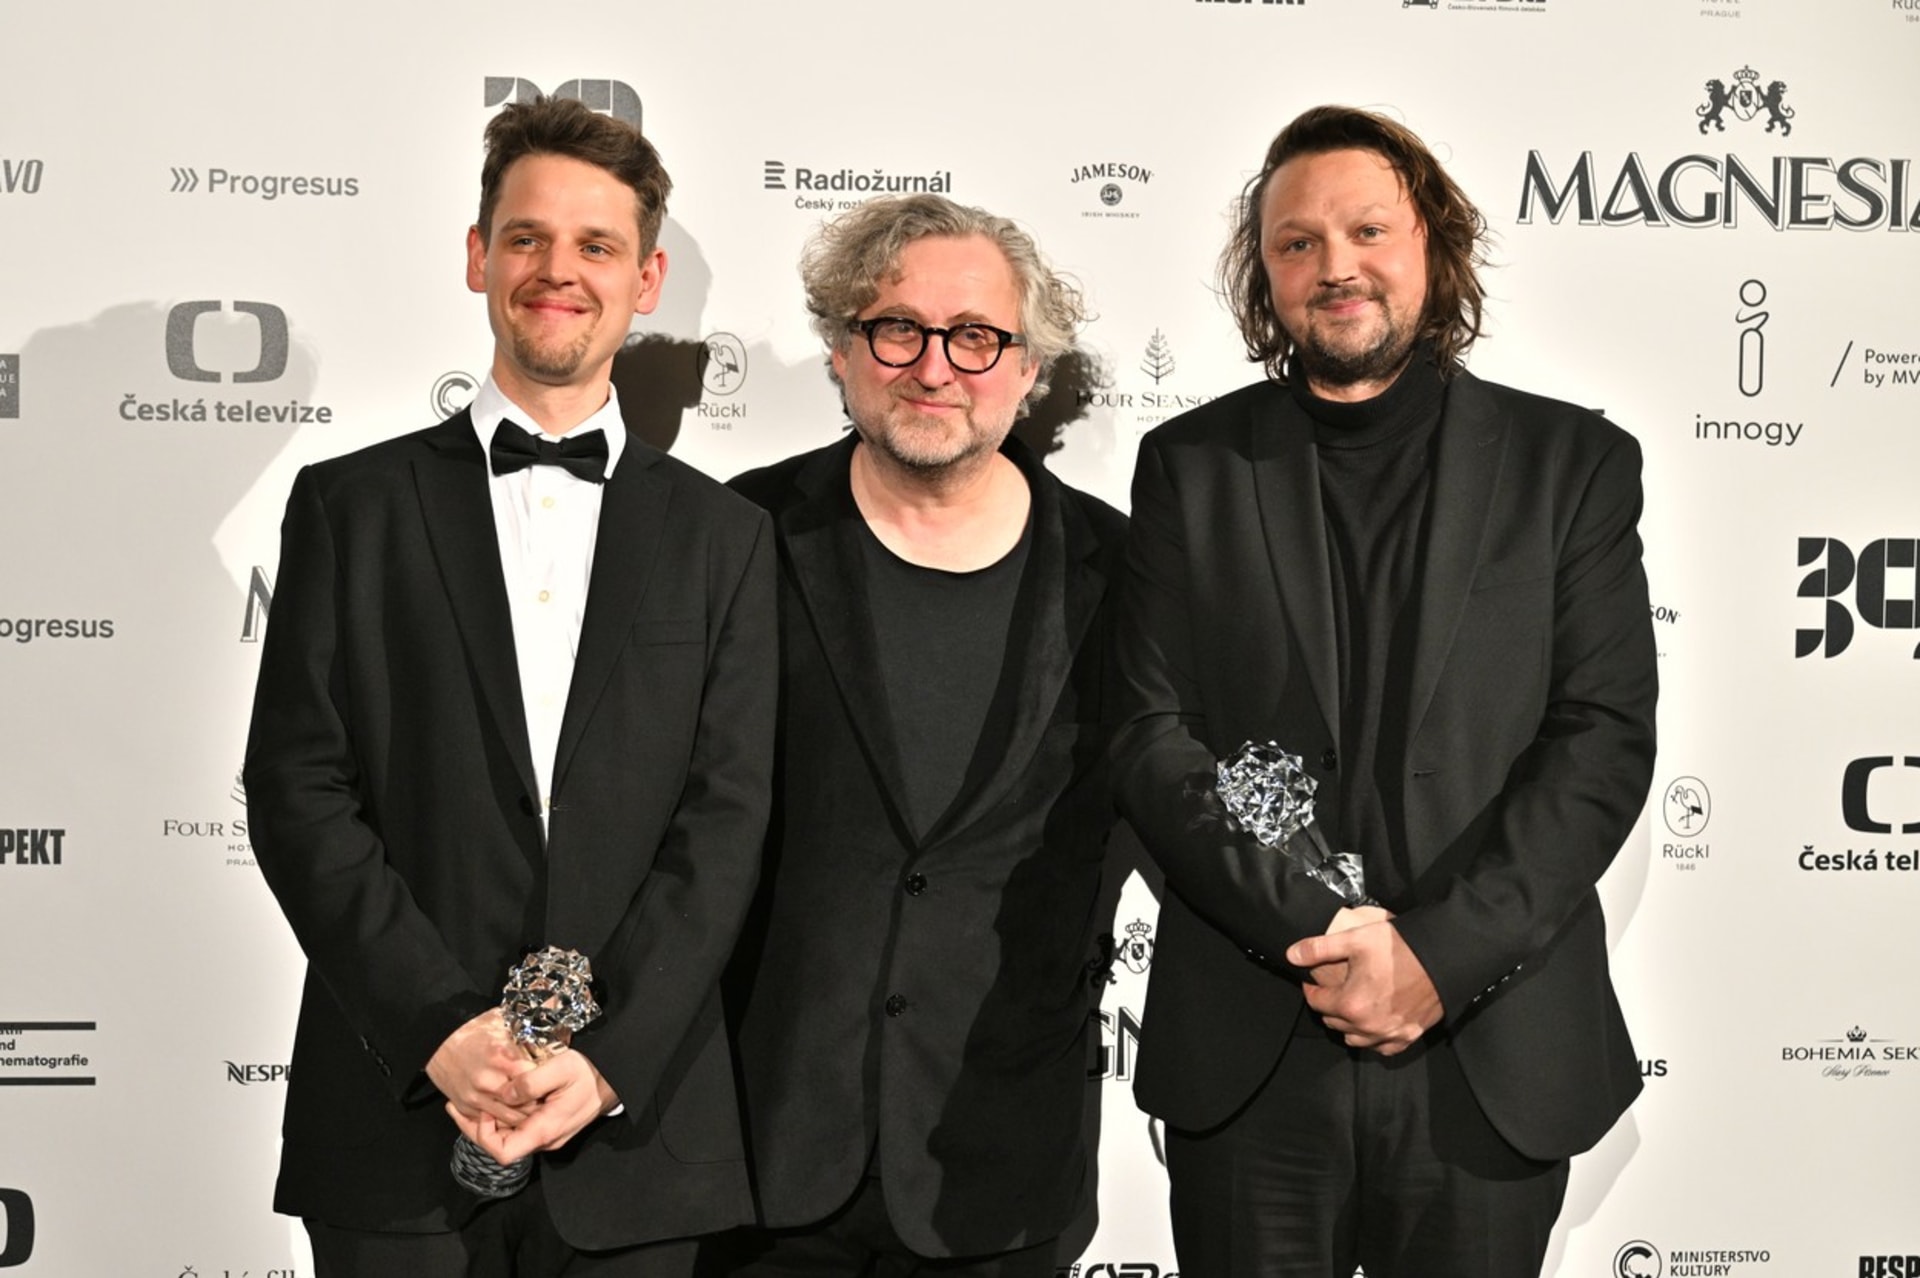 Šimon Hájek (vpravo) a Jakub Jelínek (vlevo) získali cenu za nejlepší střih za film Banger. Cenu jim předal režisér Jan Hřebejk (uprostřed).